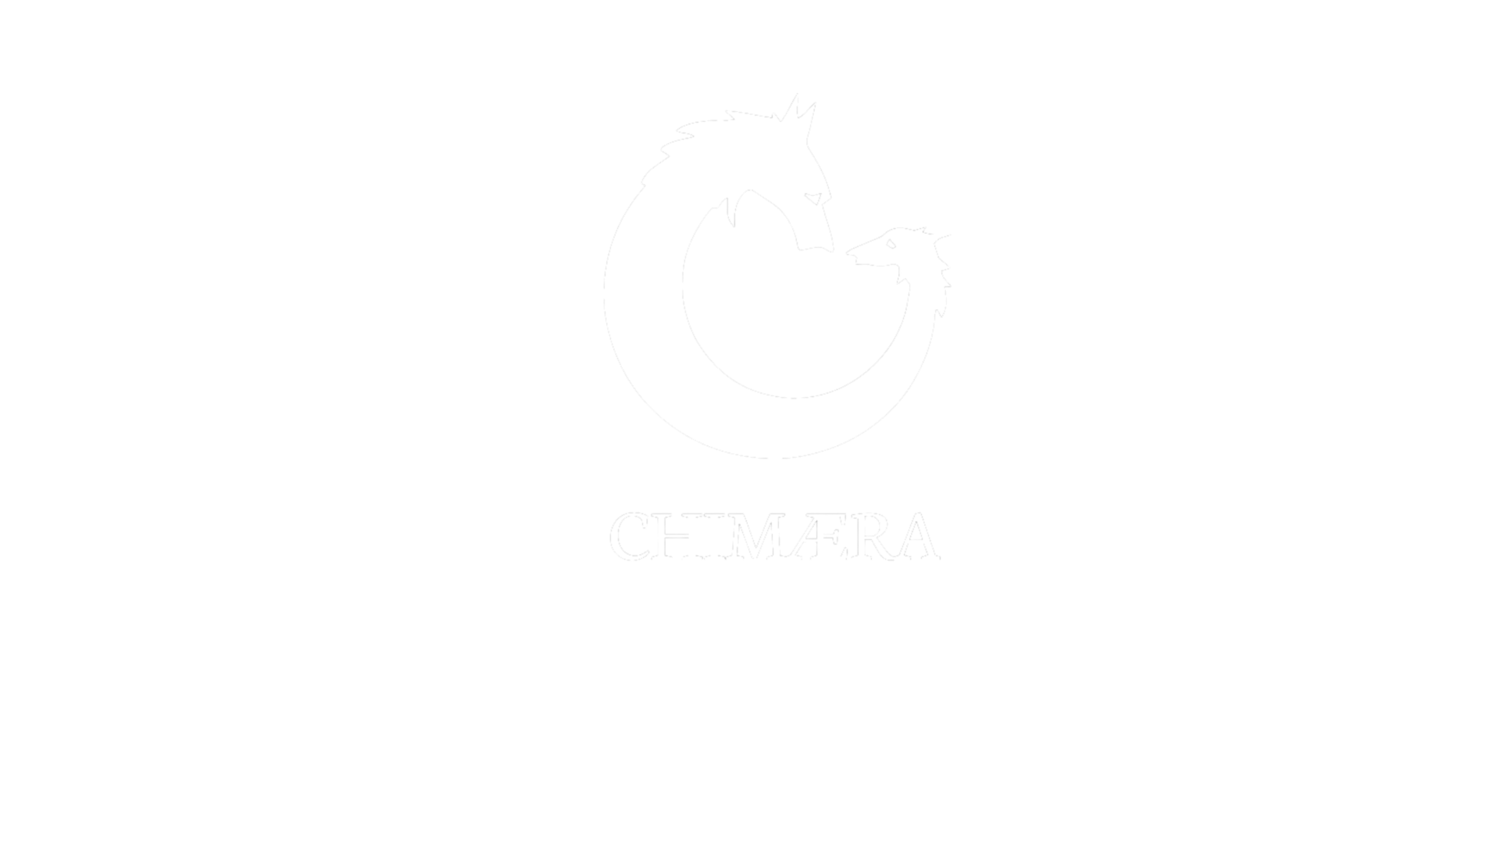 CHIMAERA